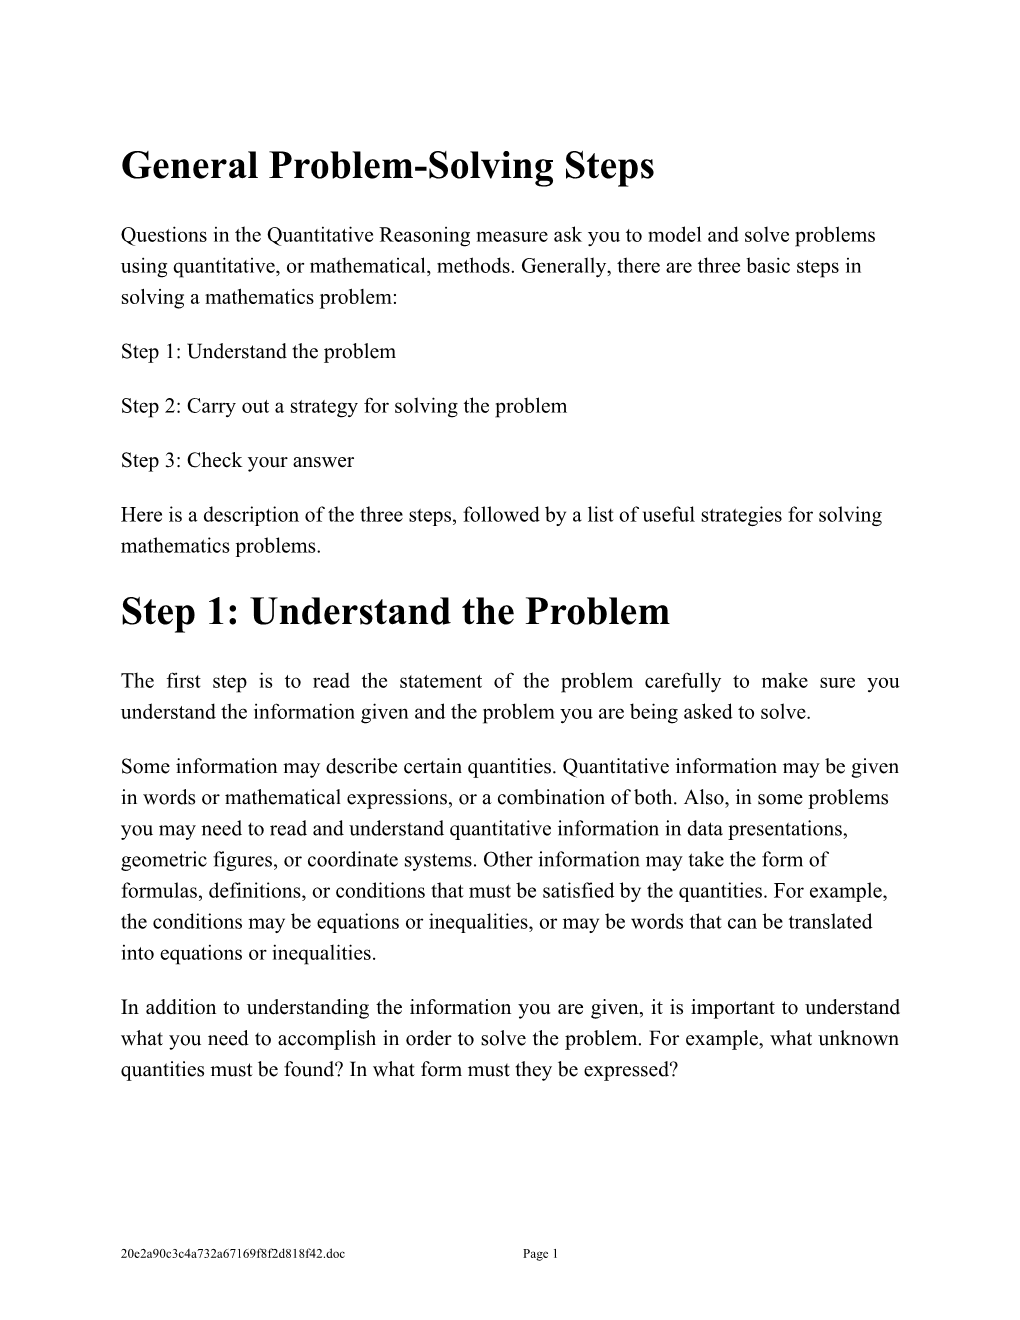 General Problem-Solving Steps